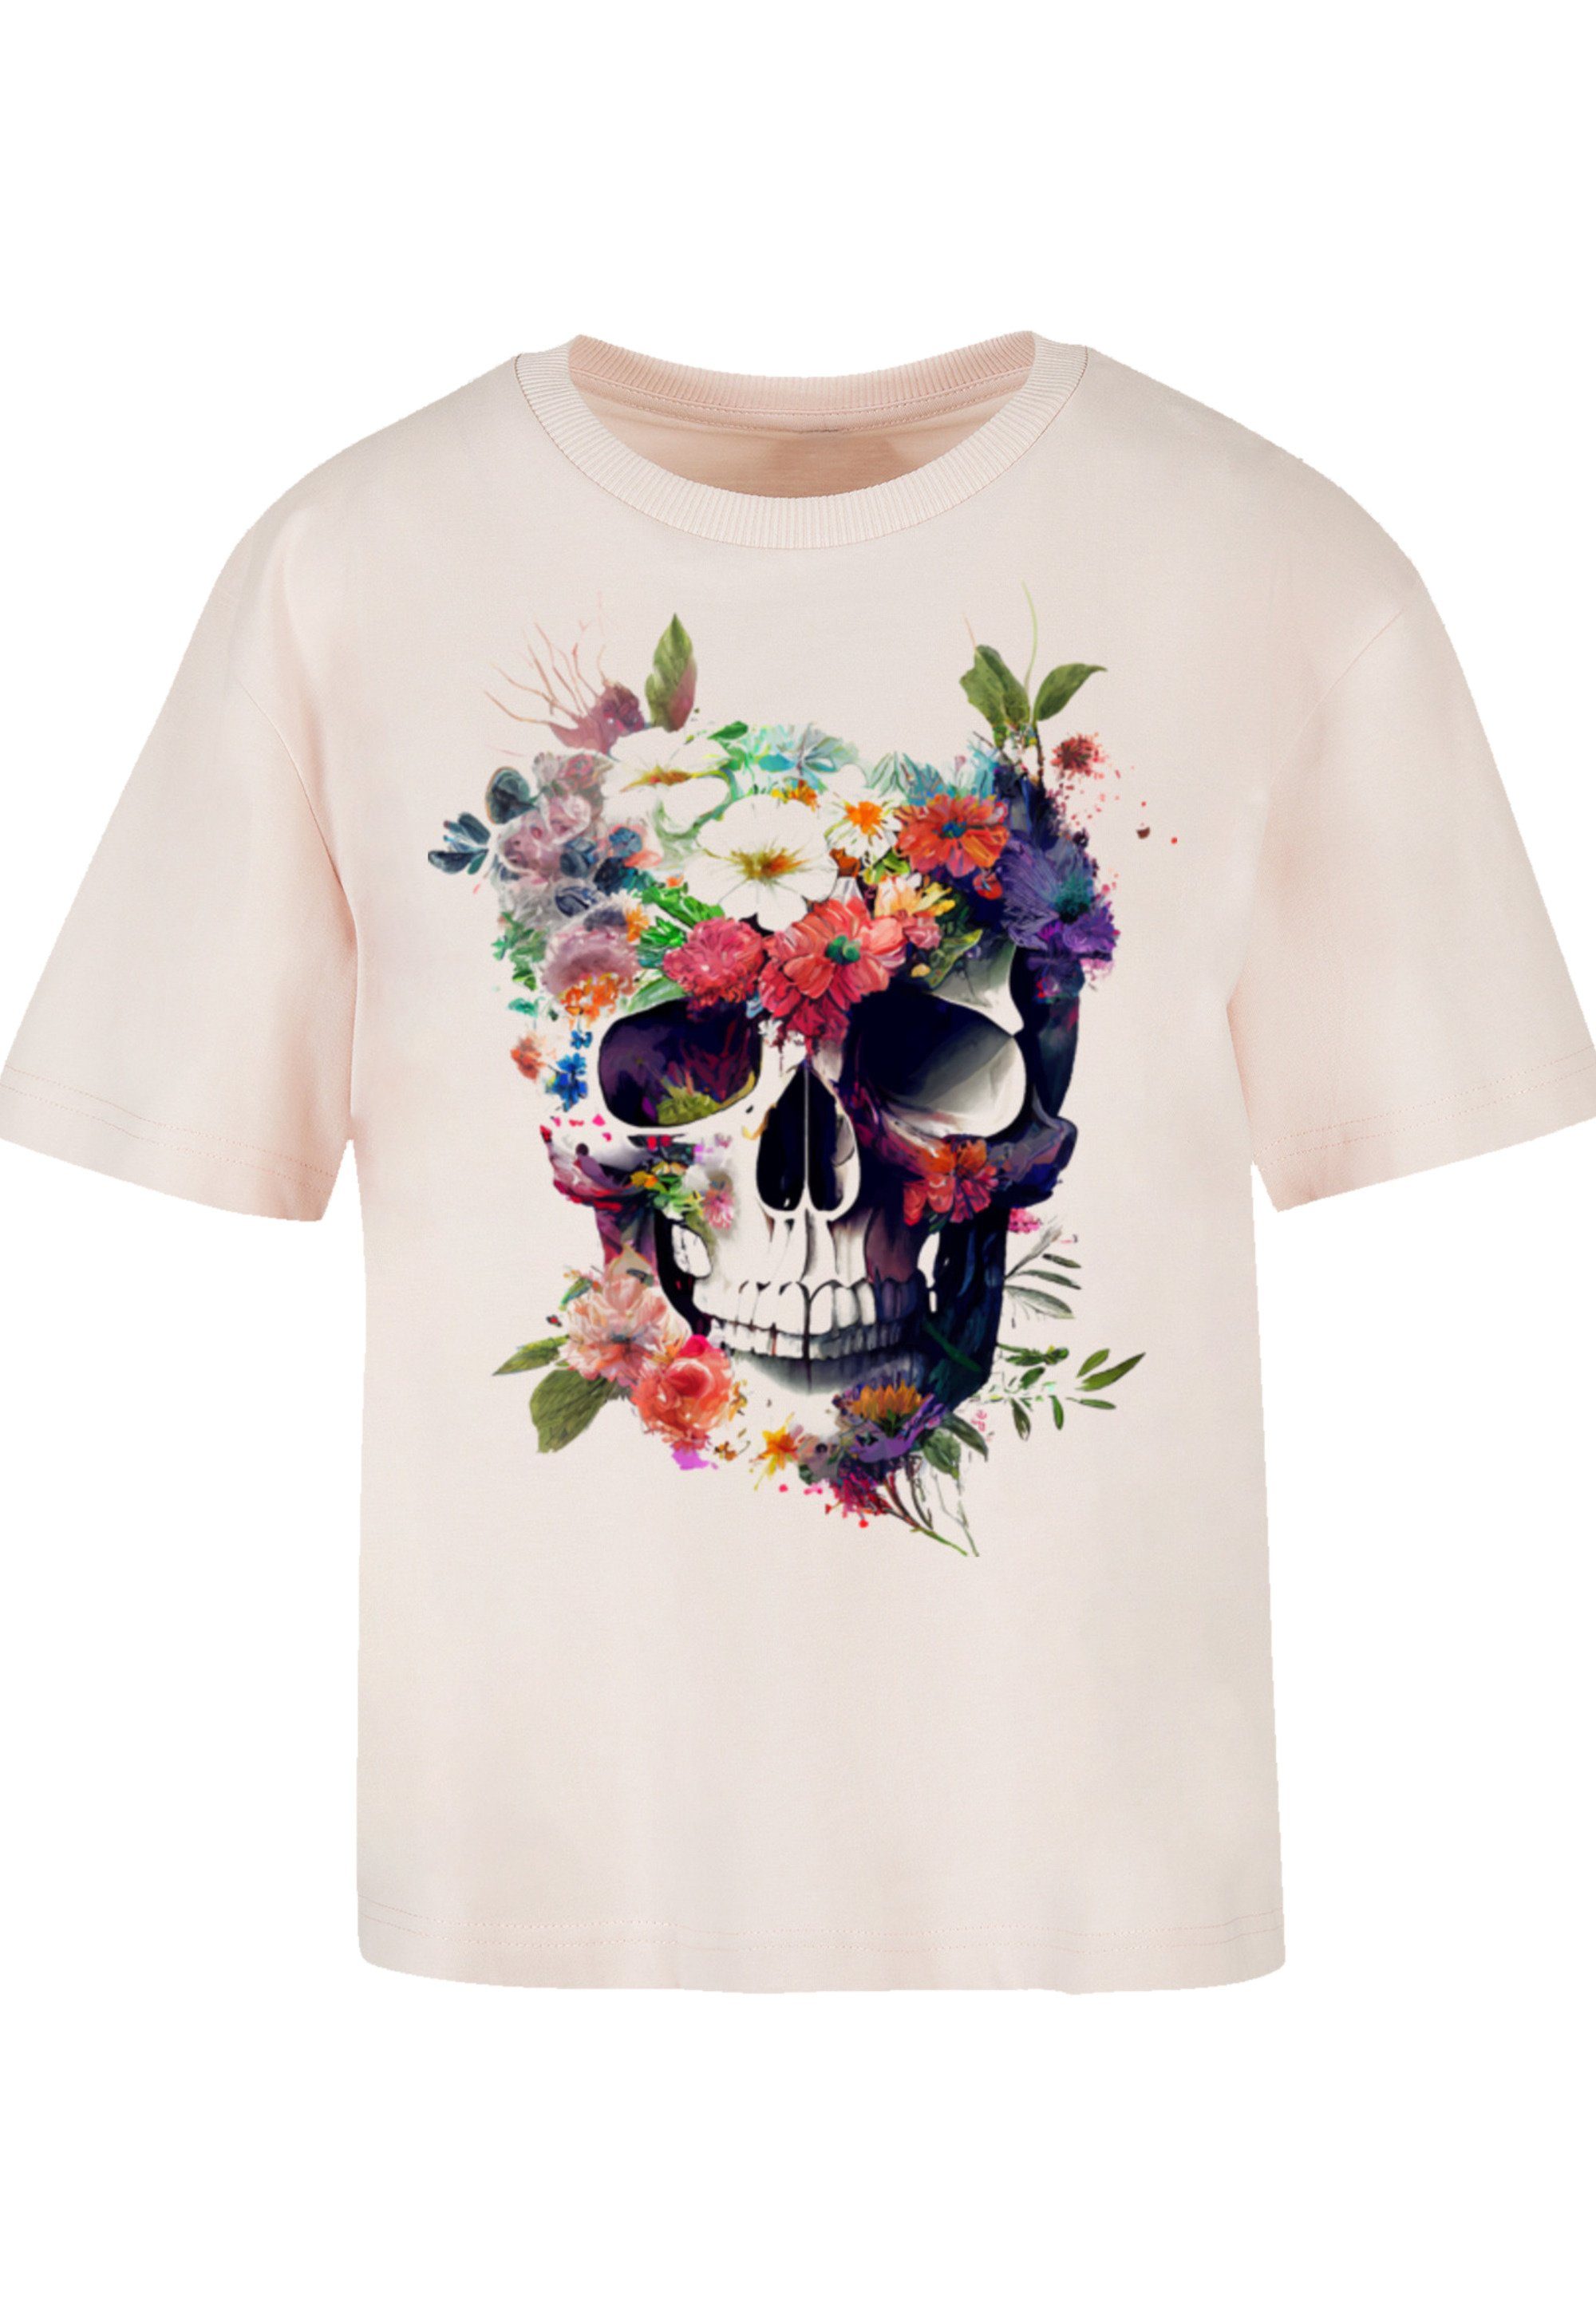 Totenkopf Gerippter Blumen Print, für Rundhalsausschnitt stylischen Look T-Shirt F4NT4STIC